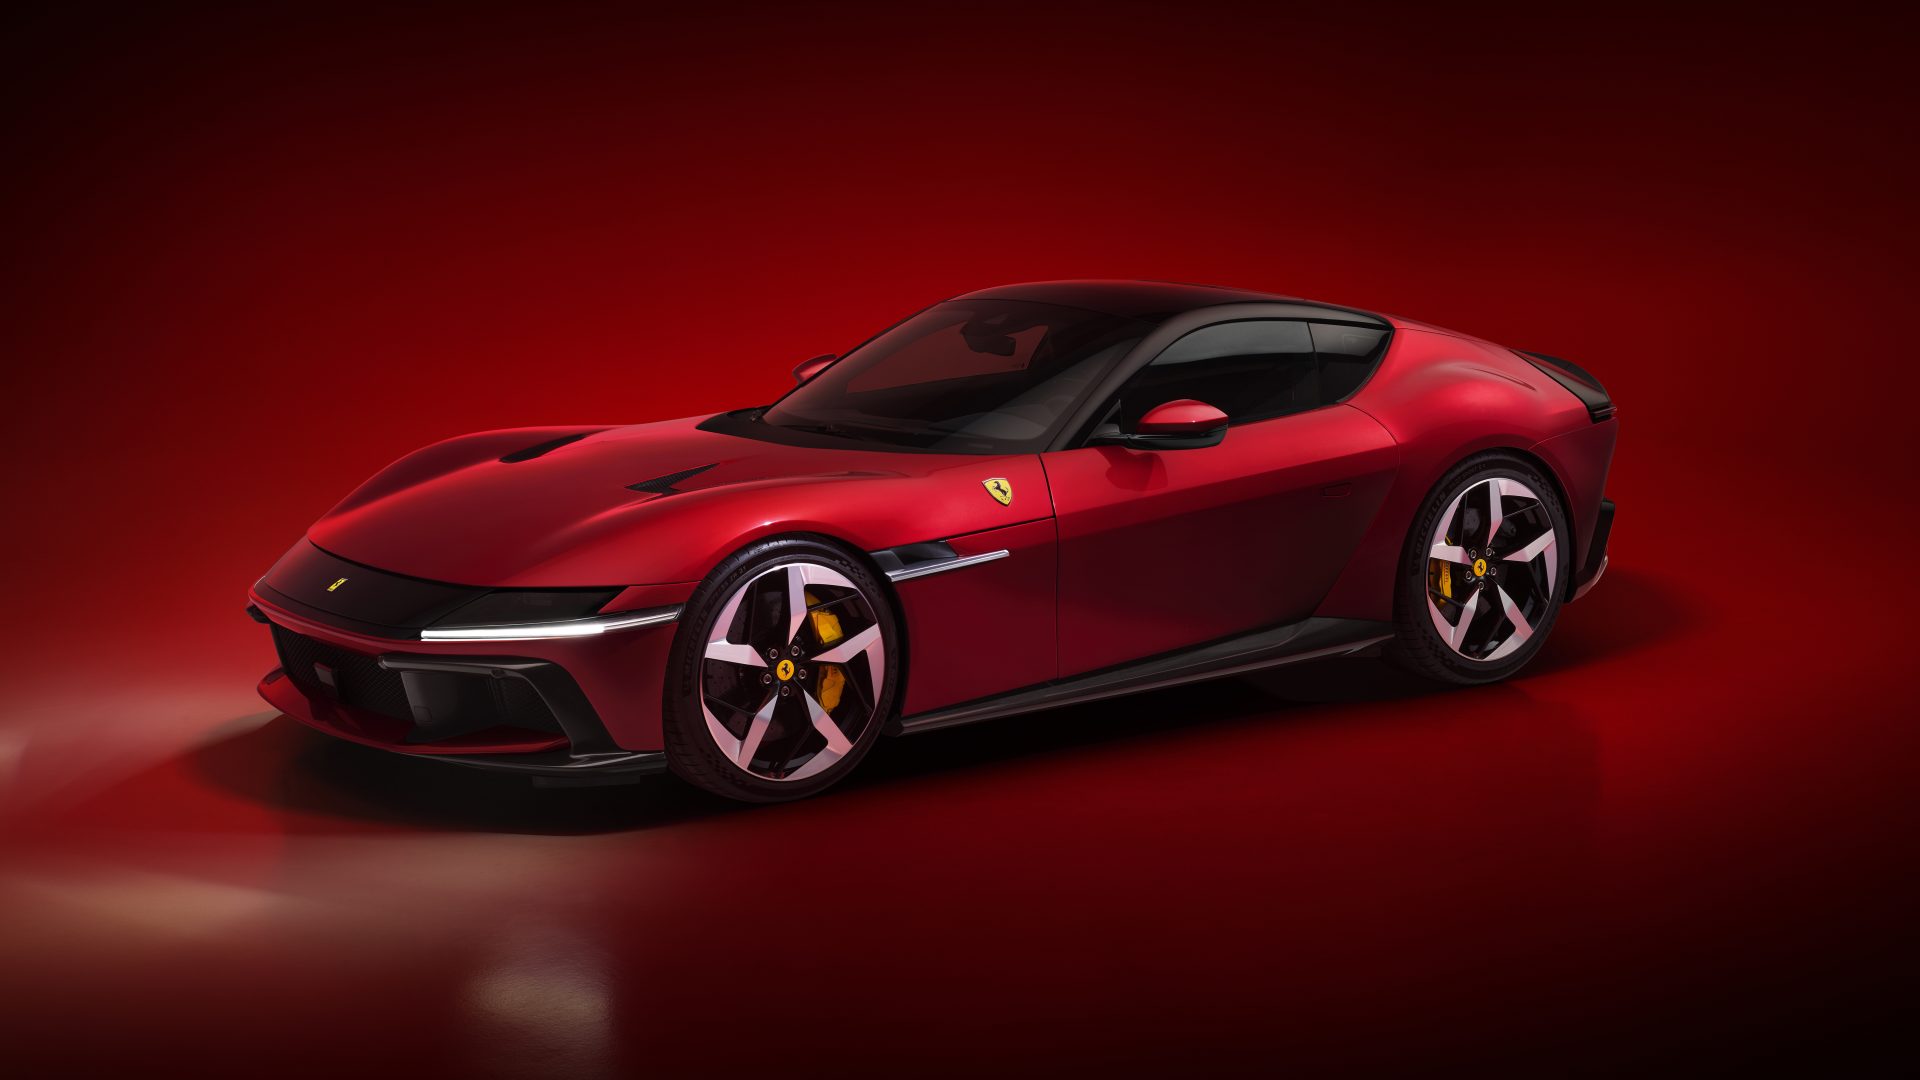 New Ferrari V12 ext 02 red media 0c2a8195 9958 492c 9fde 3251e26898d6 Ferrari 12Cilindri : Μια σύγχρονη Daytona